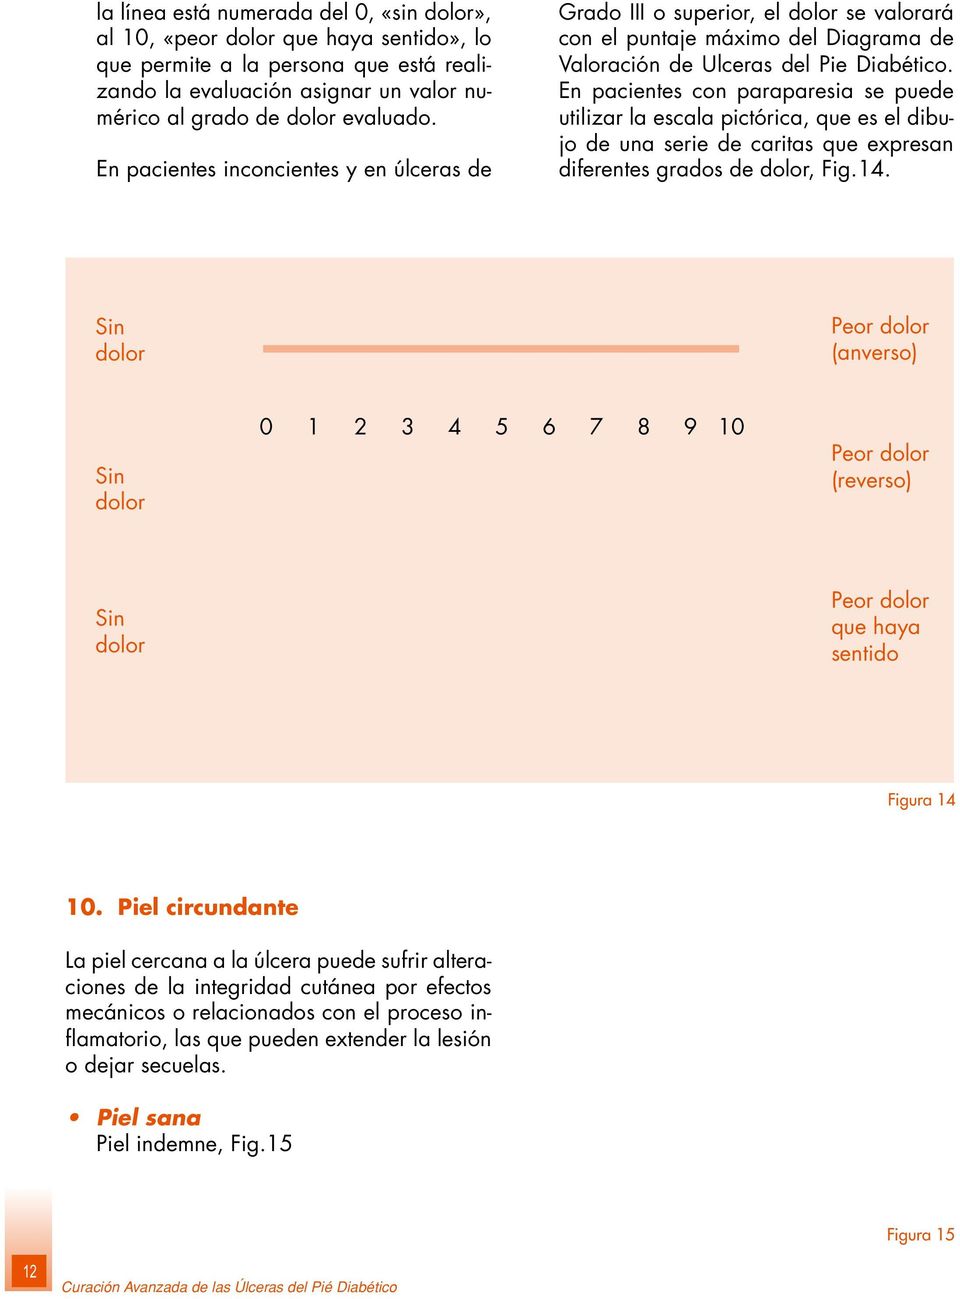 En pacientes con paraparesia se puede utilizar la escala pictórica, que es el dibujo de una serie de caritas que expresan diferentes grados de dolor, Fig.14.